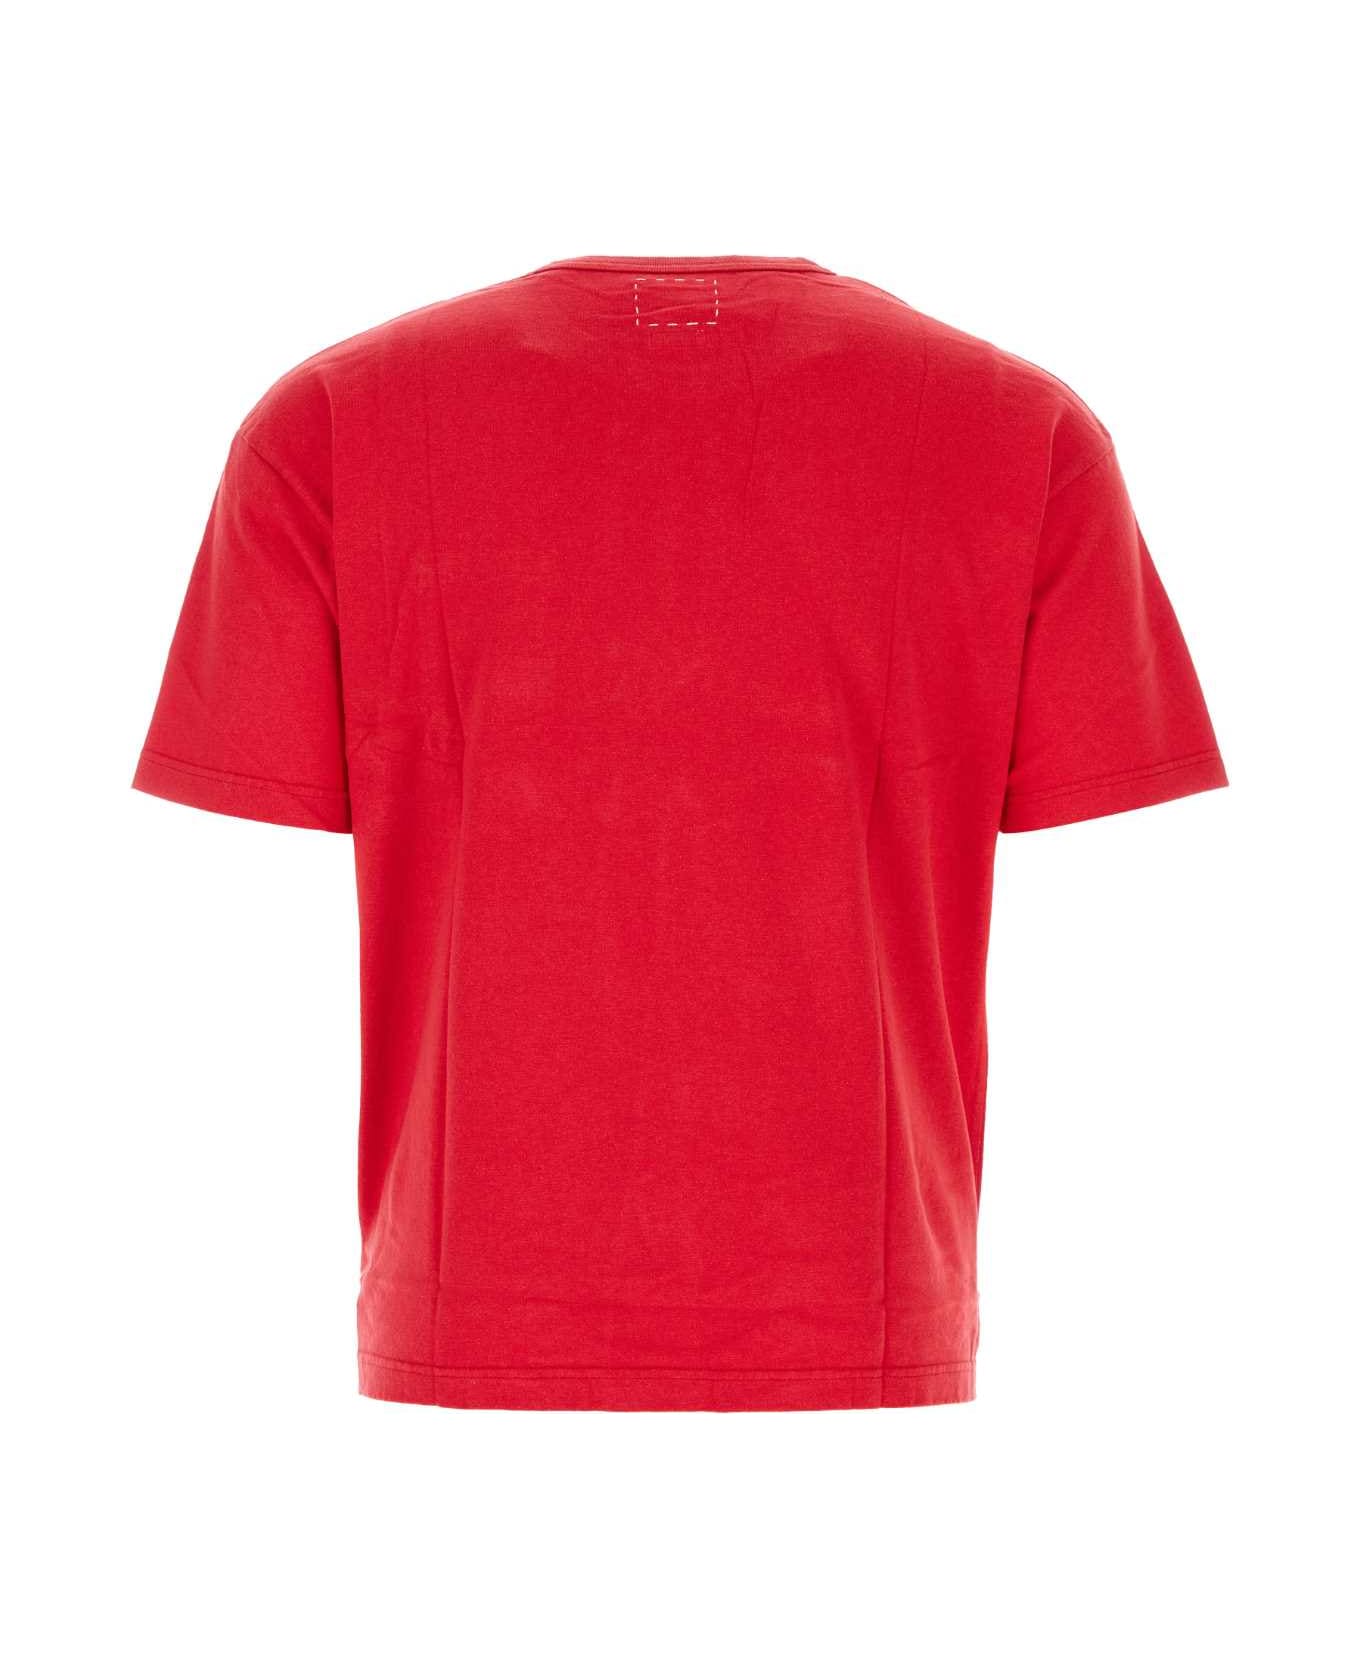 Visvim Red Cotton Jumbo T-shirt - RED